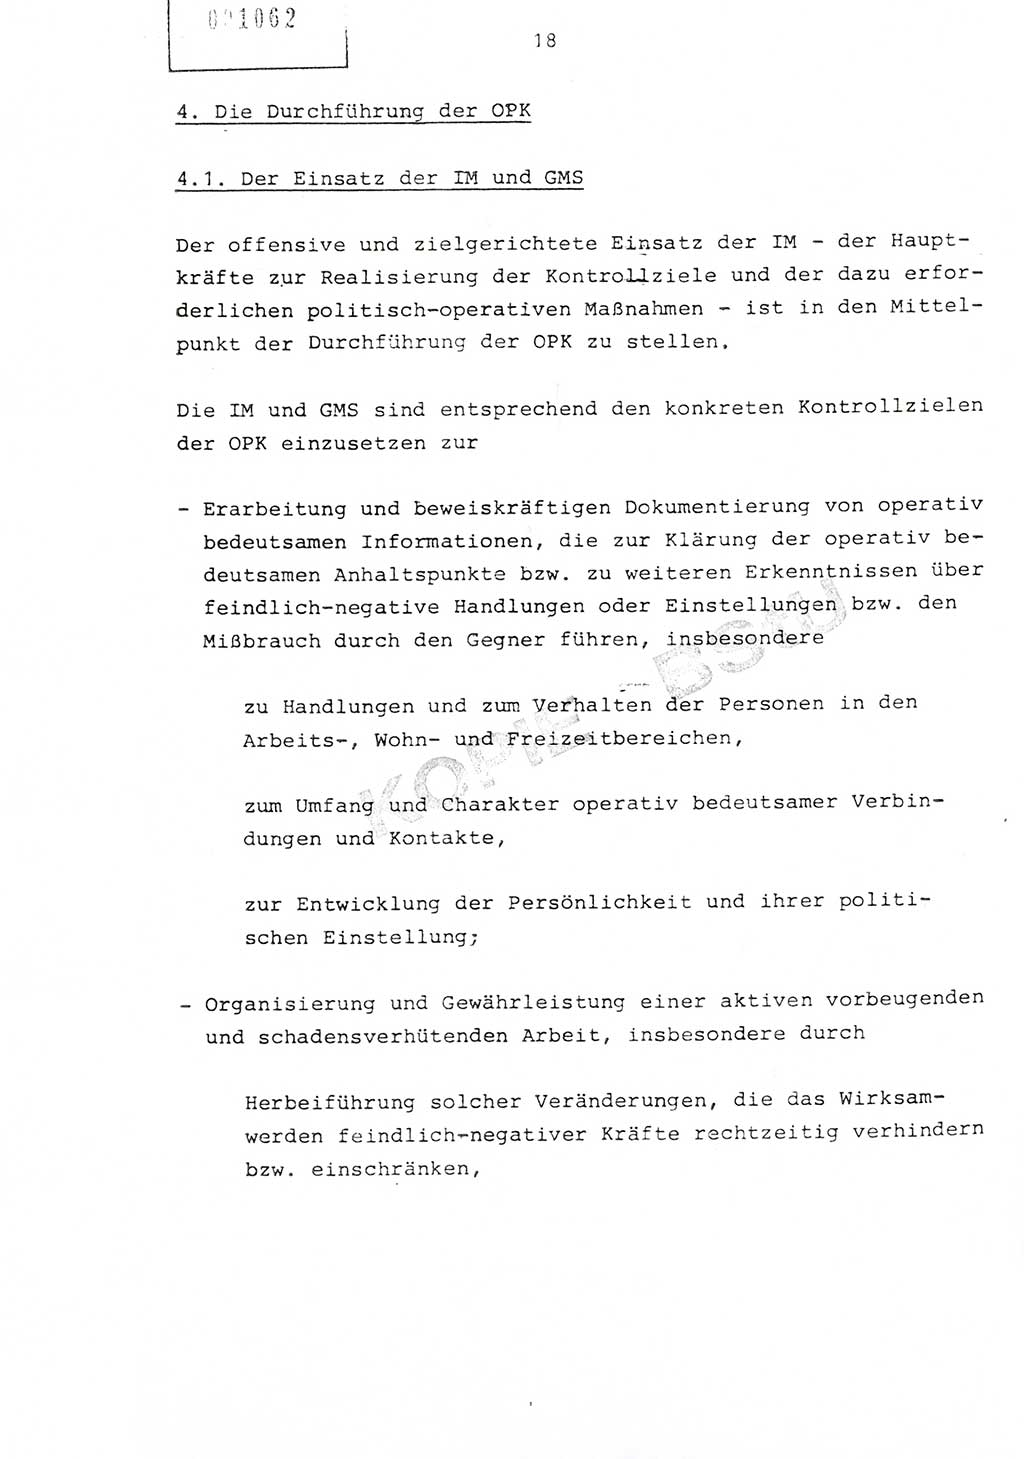 Richtlinie Nr. 1/81 über die operative Personenkontrolle (OPK), Ministerium für Staatssicherheit (MfS) [Deutsche Demokratische Republik (DDR)], Der Minister, Geheime Verschlußsache (GVS) ooo8-10/81, Berlin 1981, Blatt 18 (RL 1/81 OPK DDR MfS Min. GVS ooo8-10/81 1981, Bl. 18)